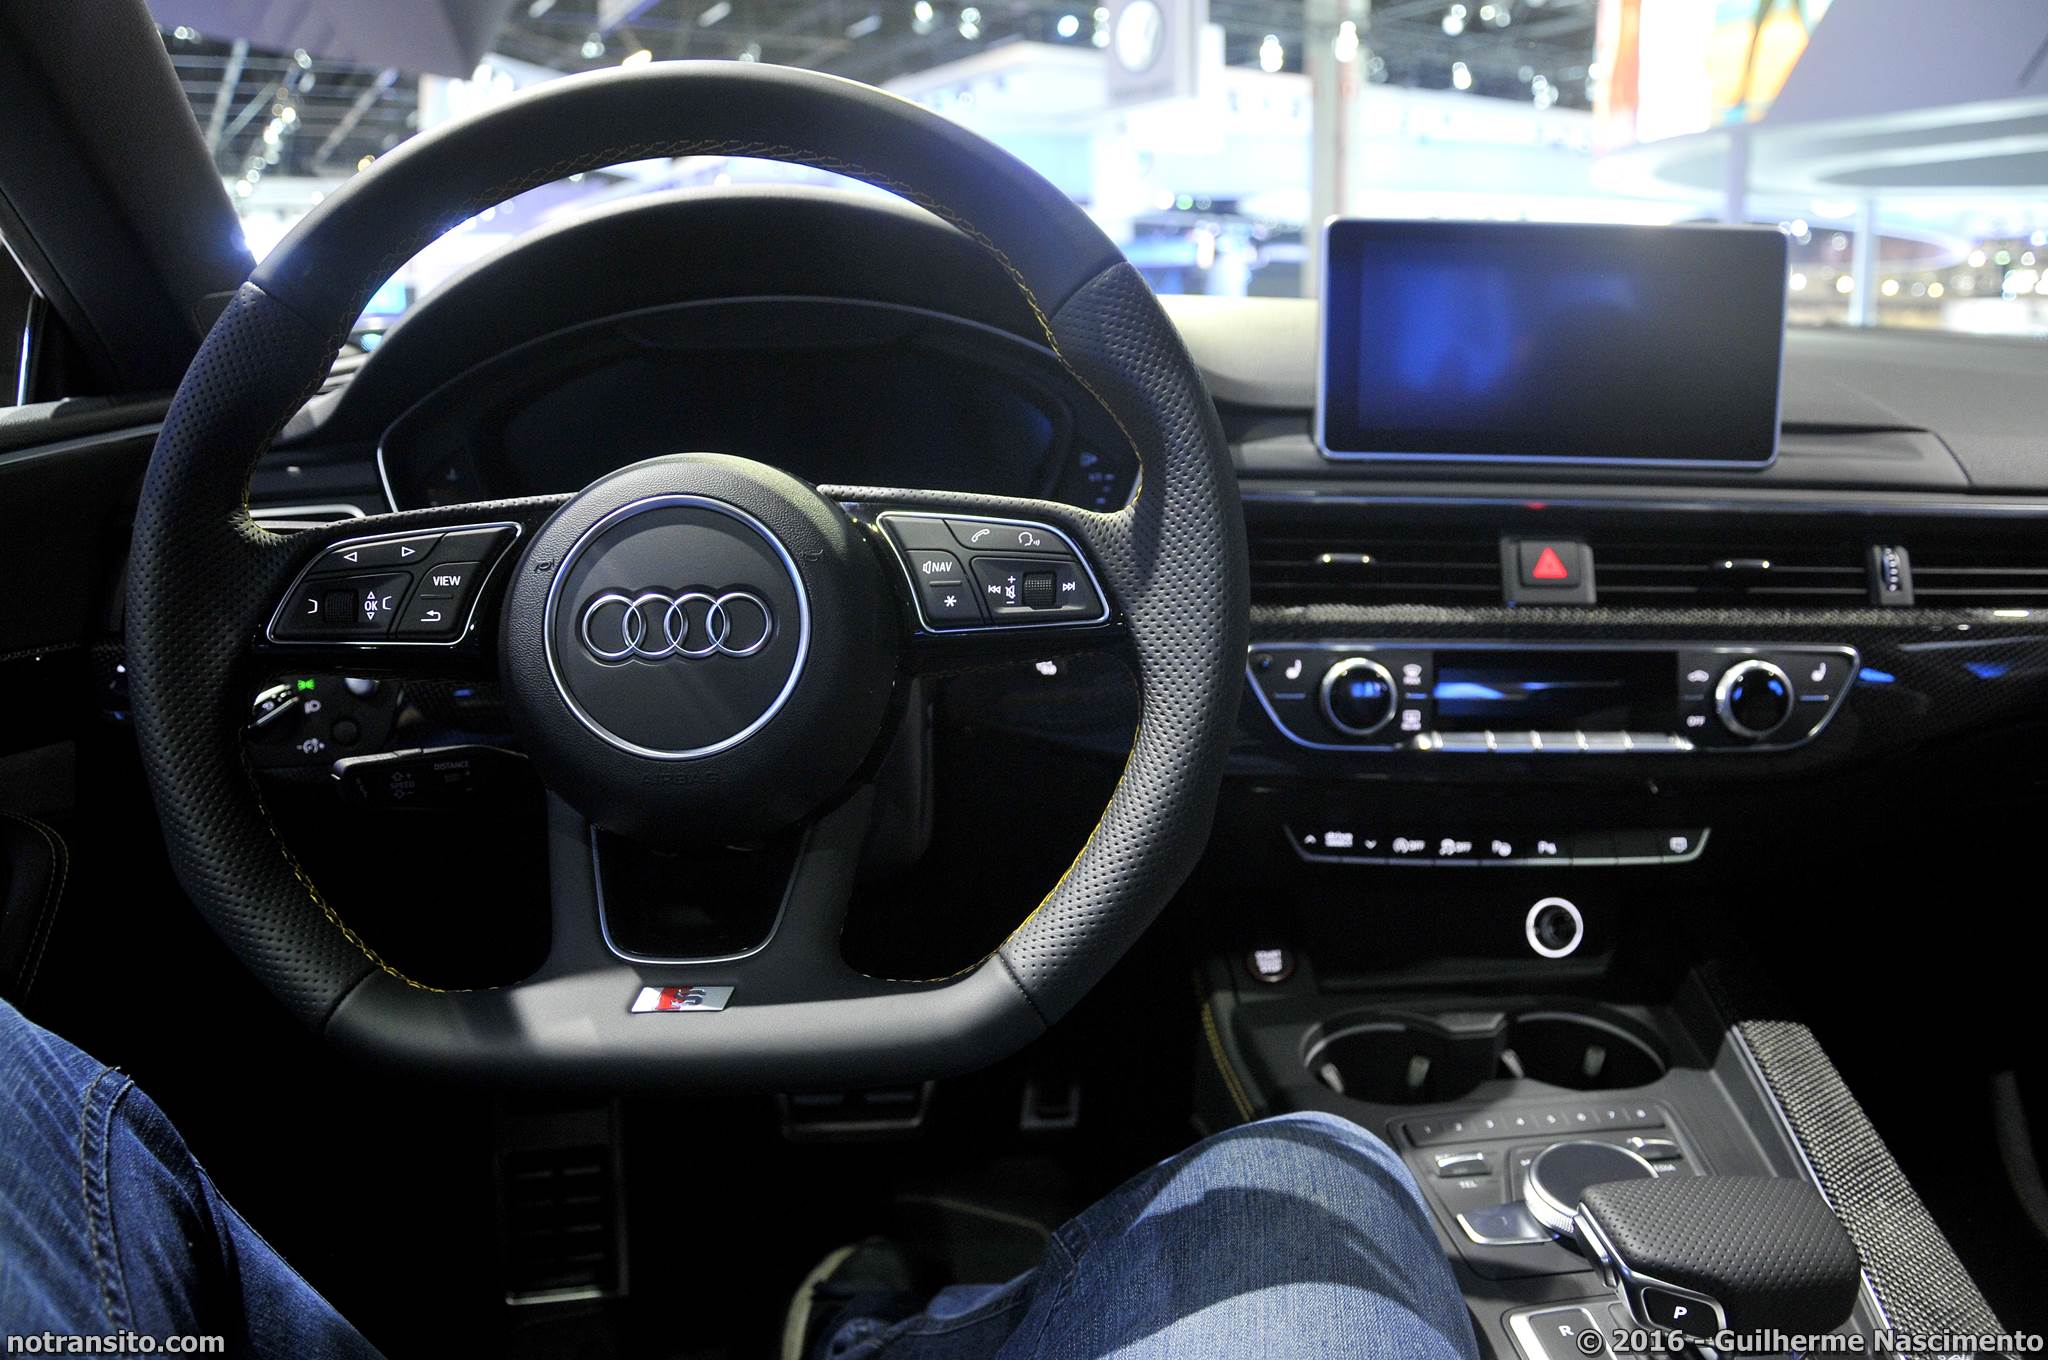 Audi S5 Coupé Salão do Automóvel 2016